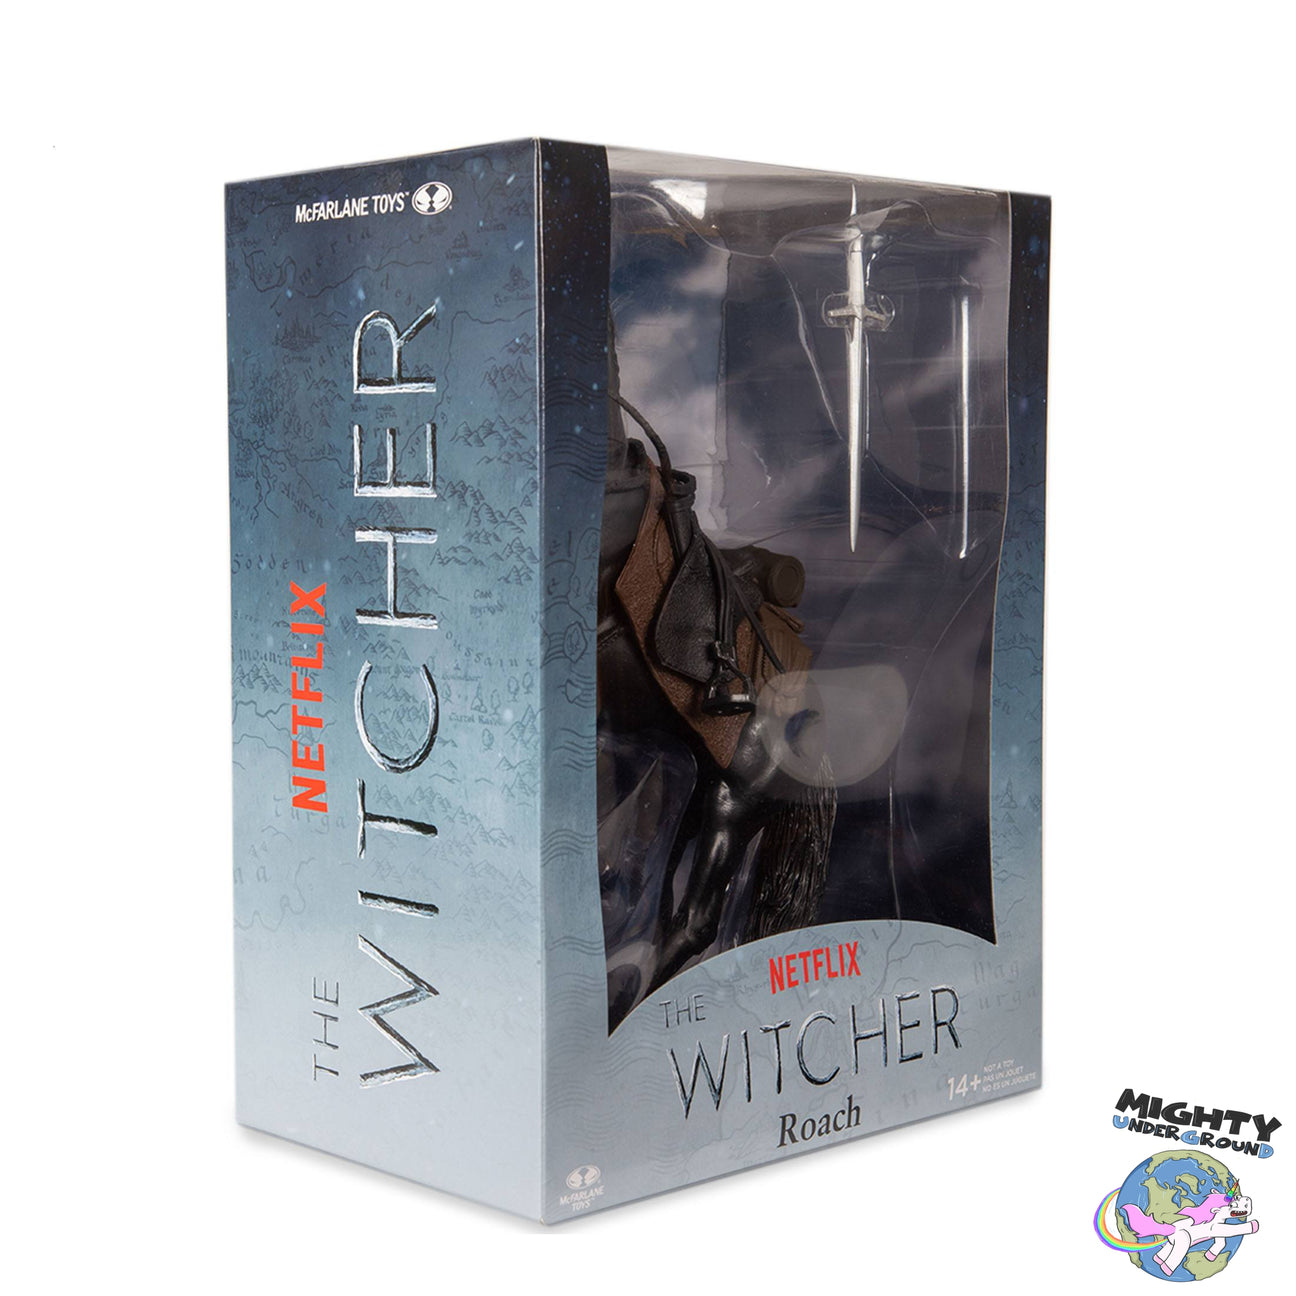 The Witcher: Roach (Netflix)-Actionfiguren-McFarlane Toys-Mighty Underground